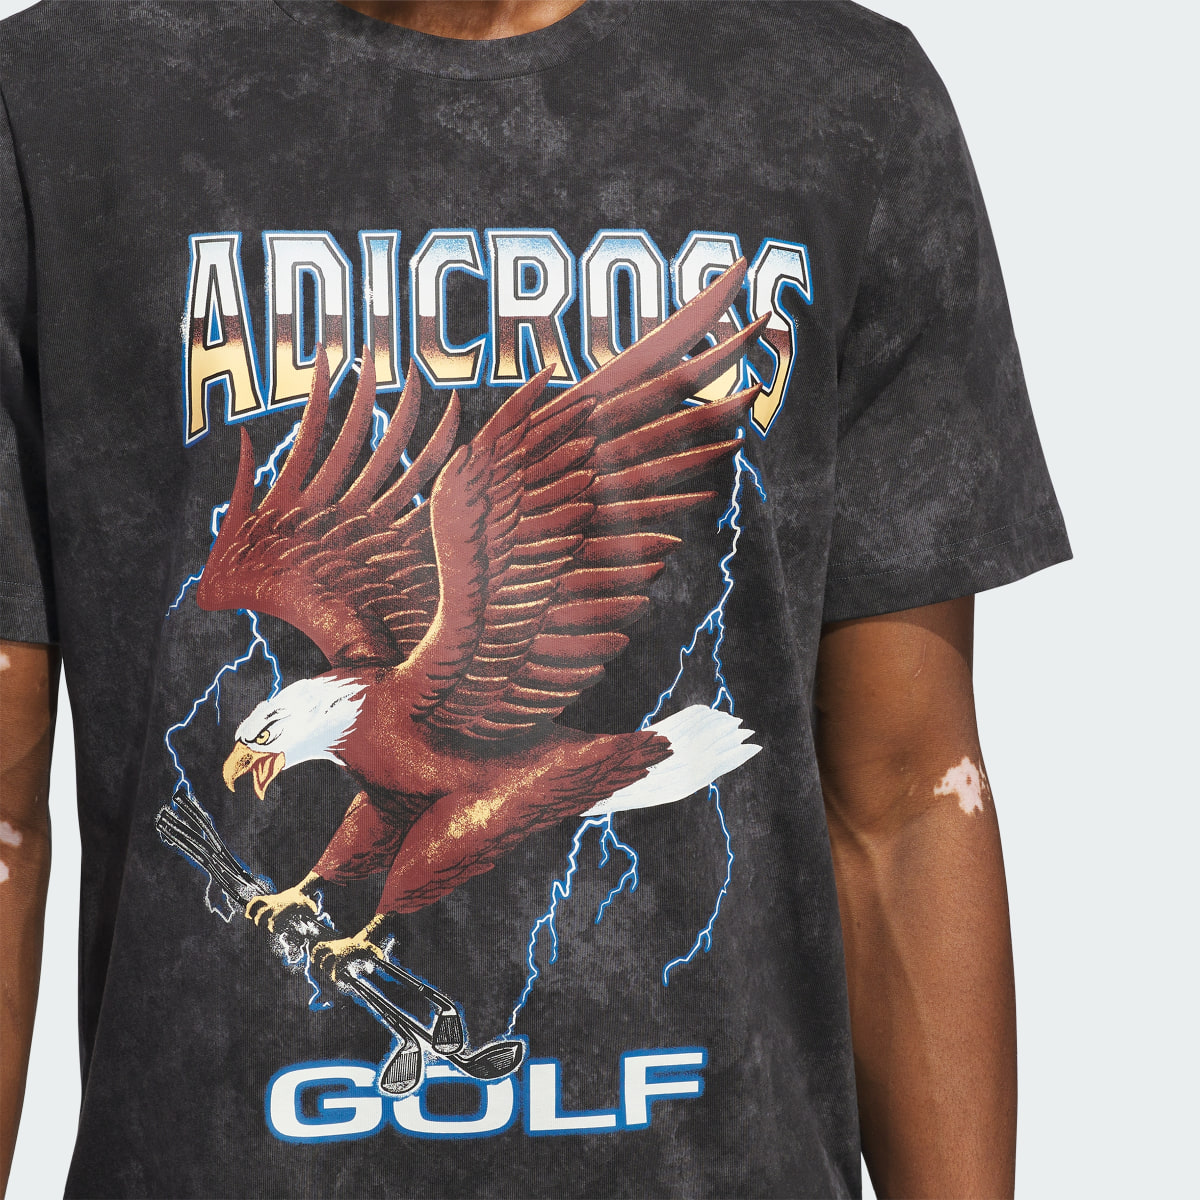 Adidas T-shirt graphique Adicross Eagle. 6